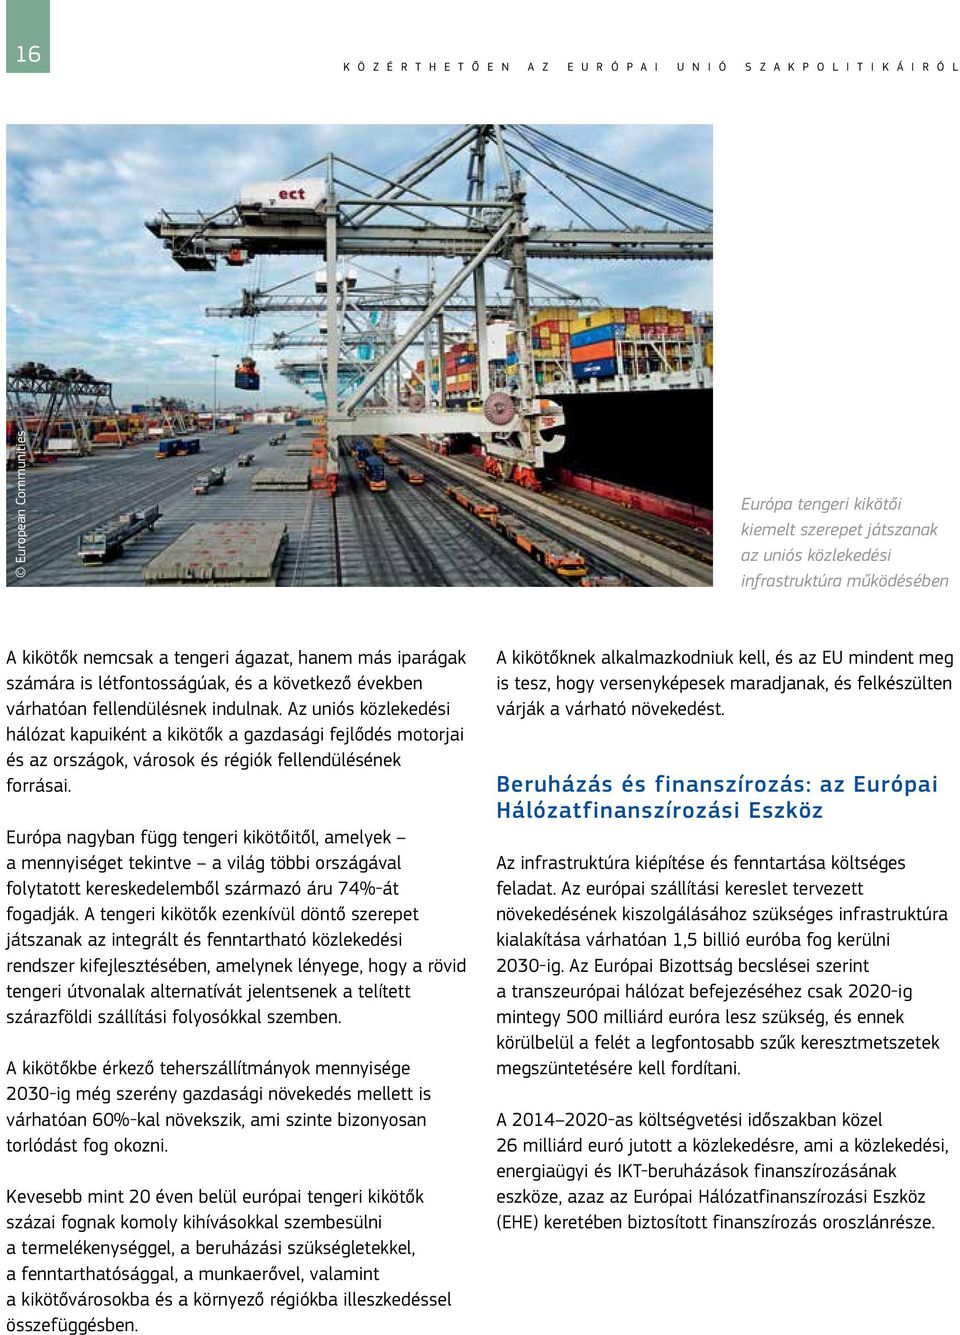 Az uniós közlekedési hálózat kapuiként a kikötők a gazdasági fejlődés motorjai és az országok, városok és régiók fellendülésének forrásai.